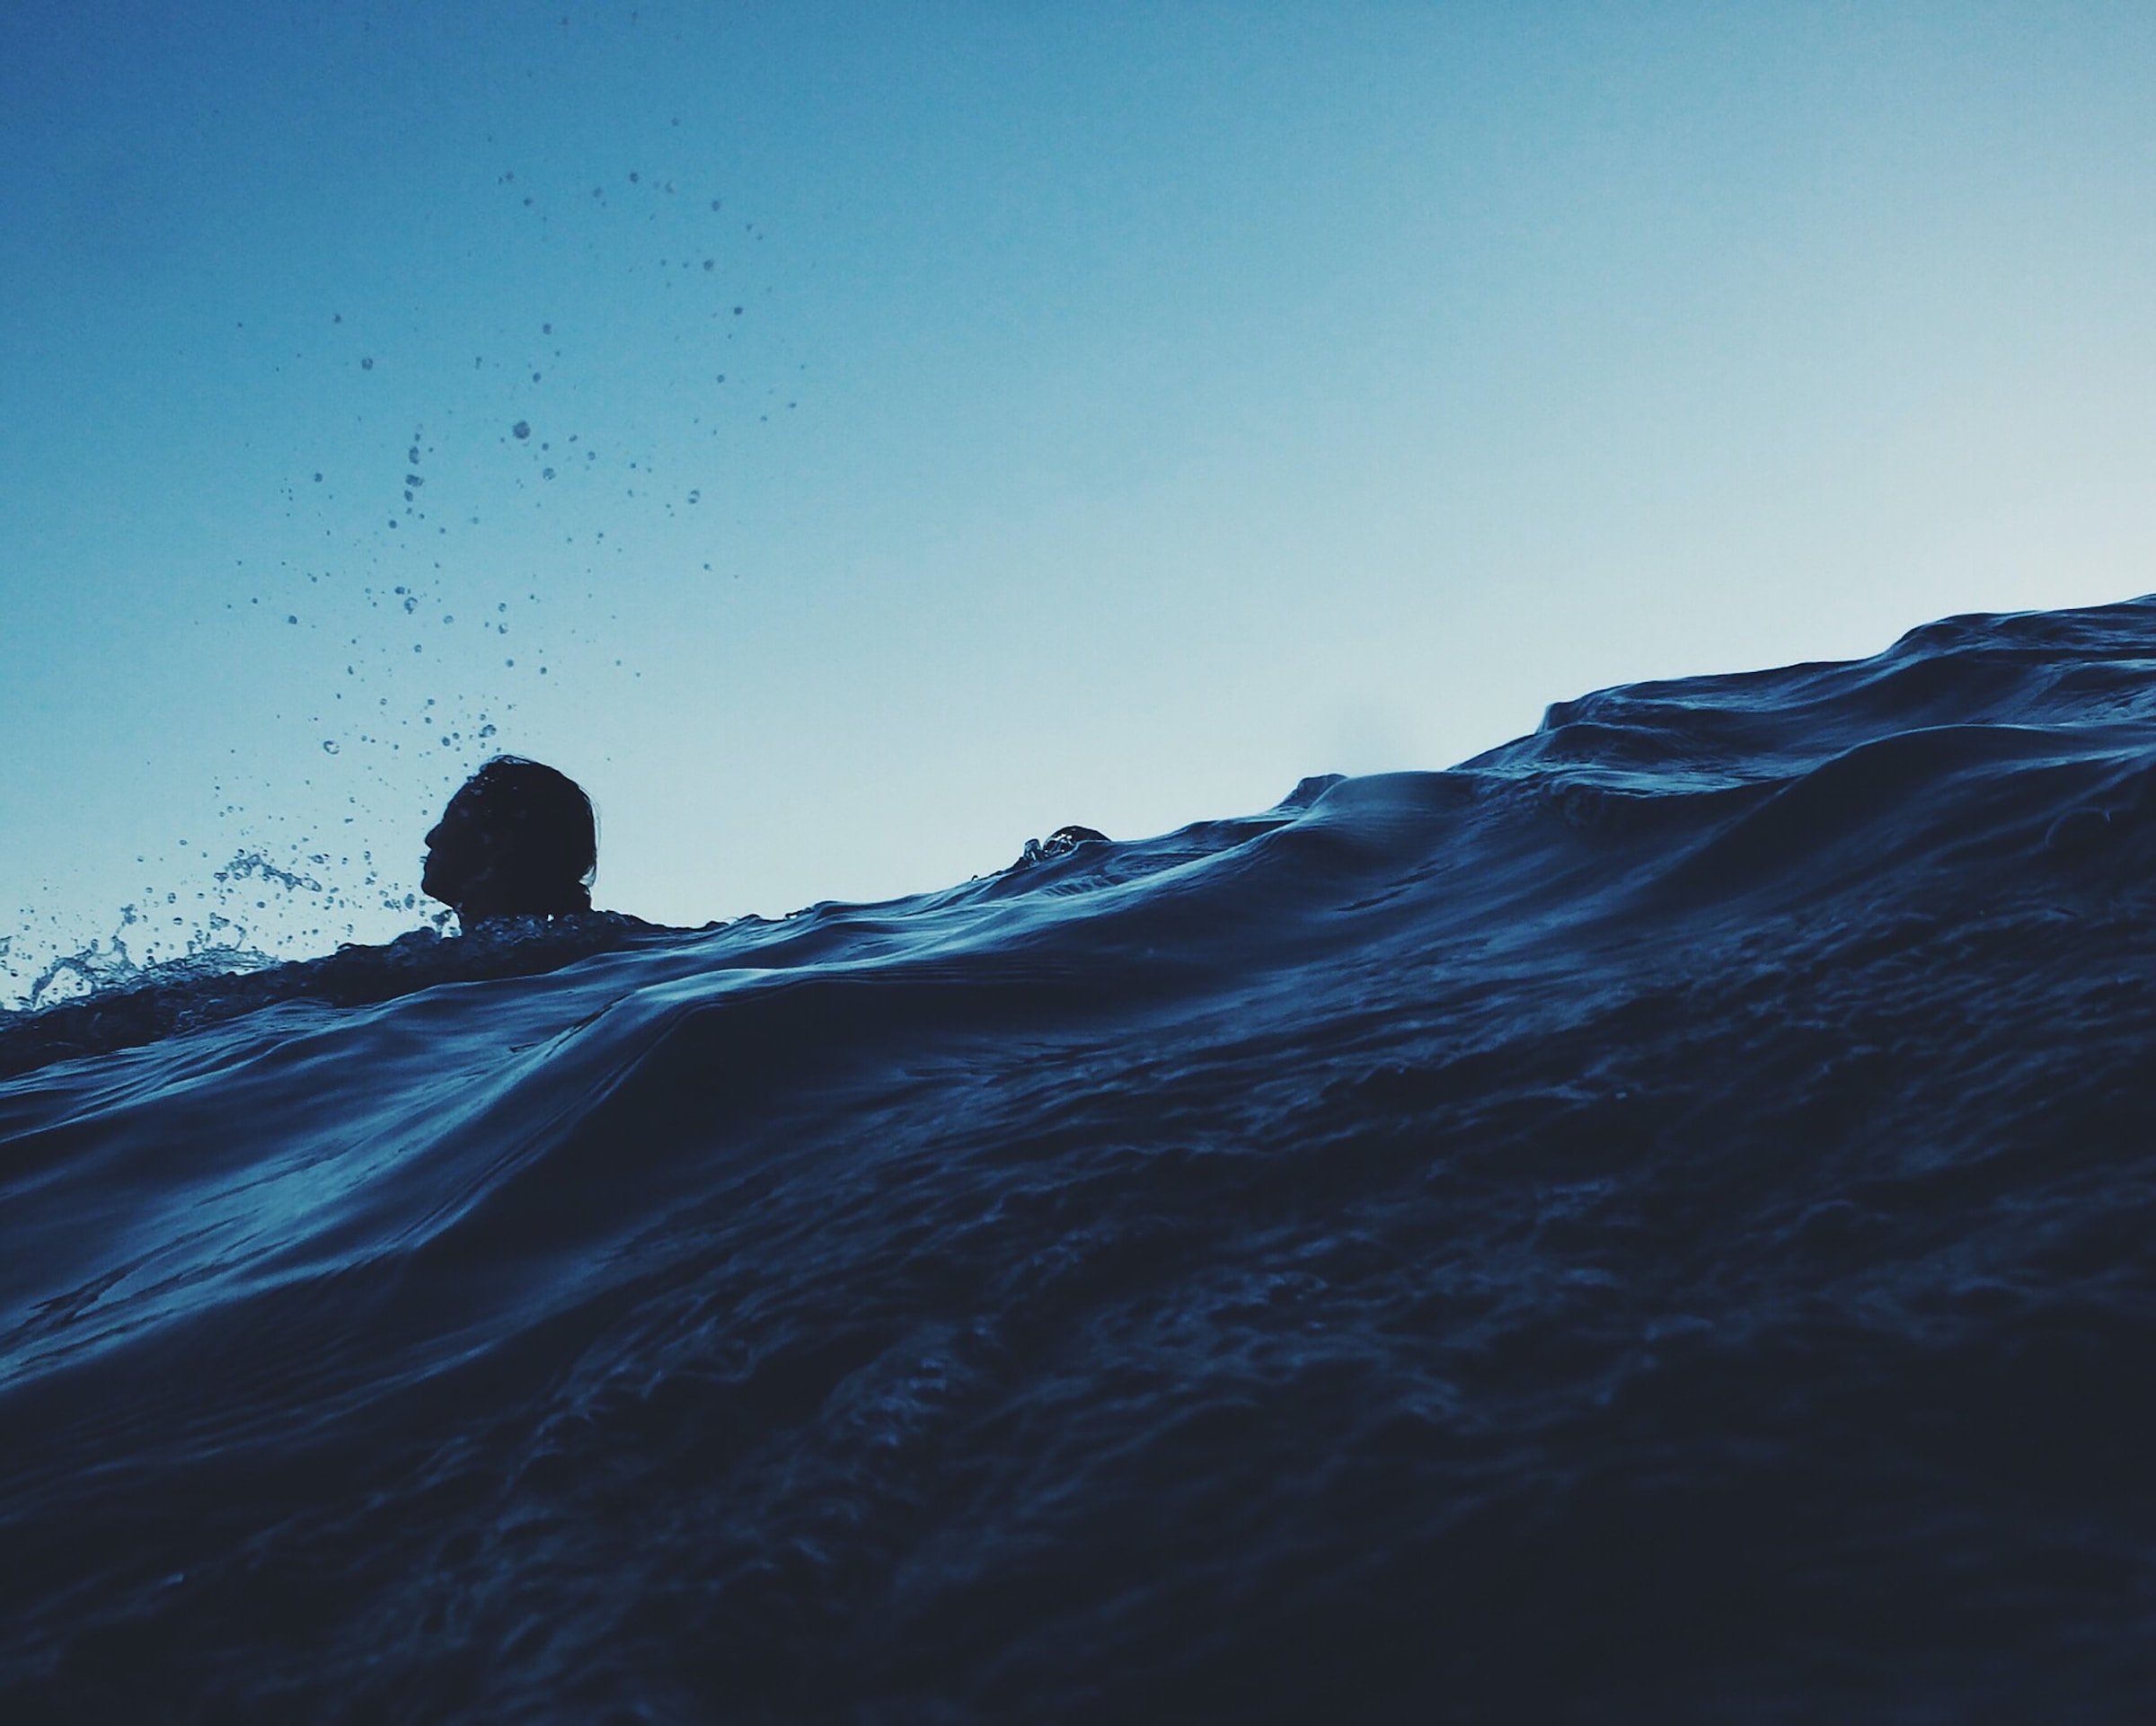 A figure struggling to swim in the sea.